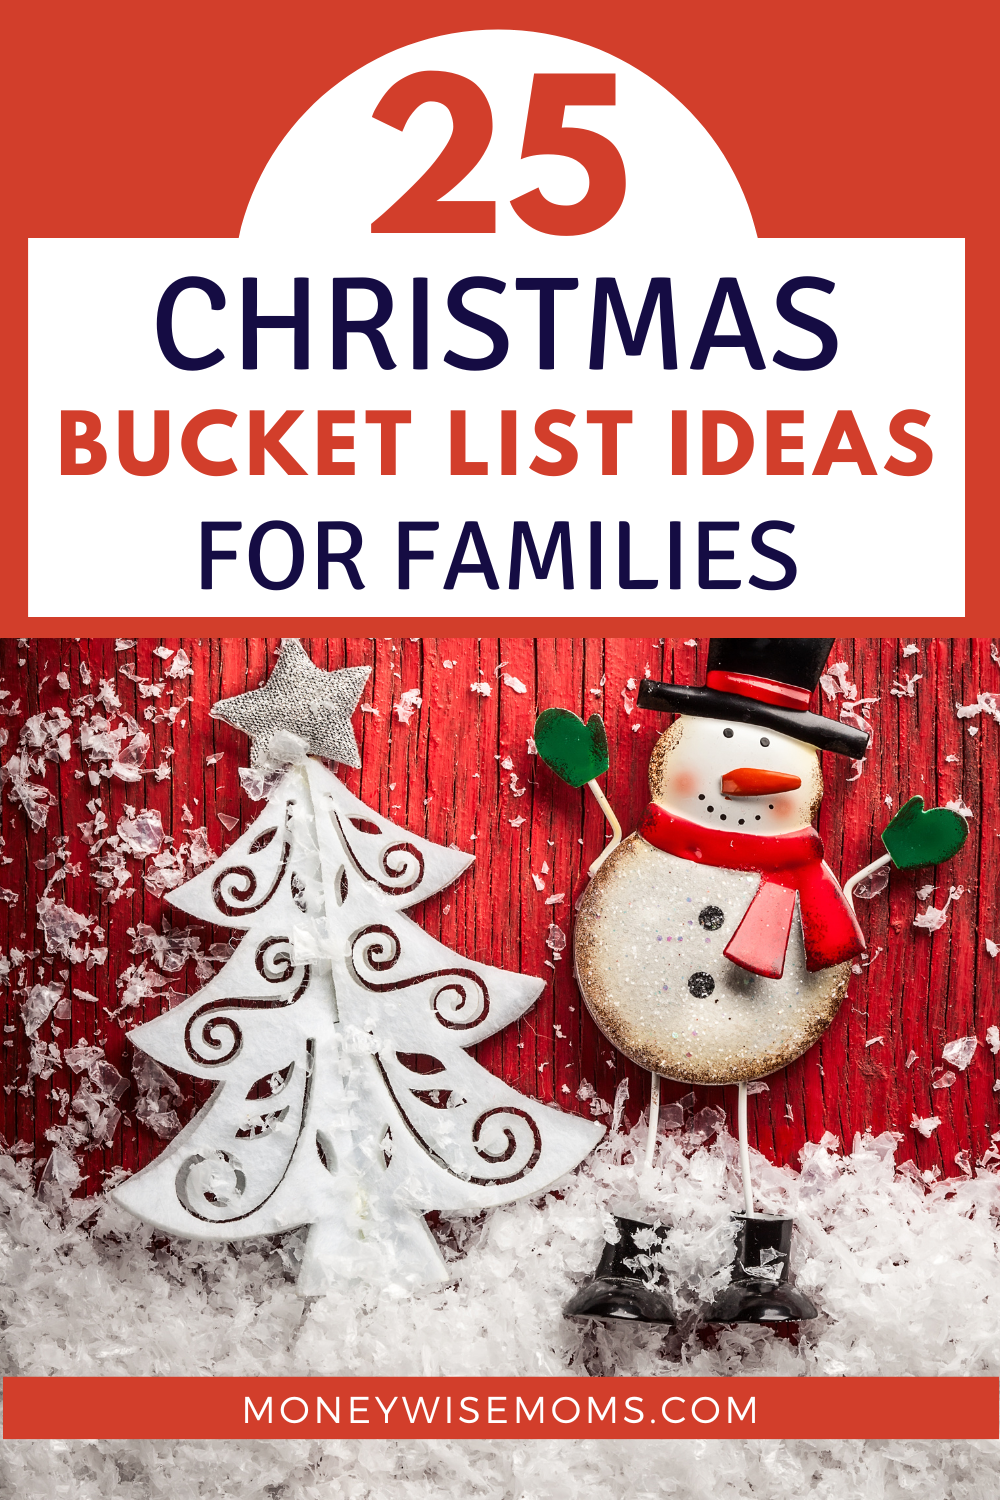 Christmas bucket list ideas for families